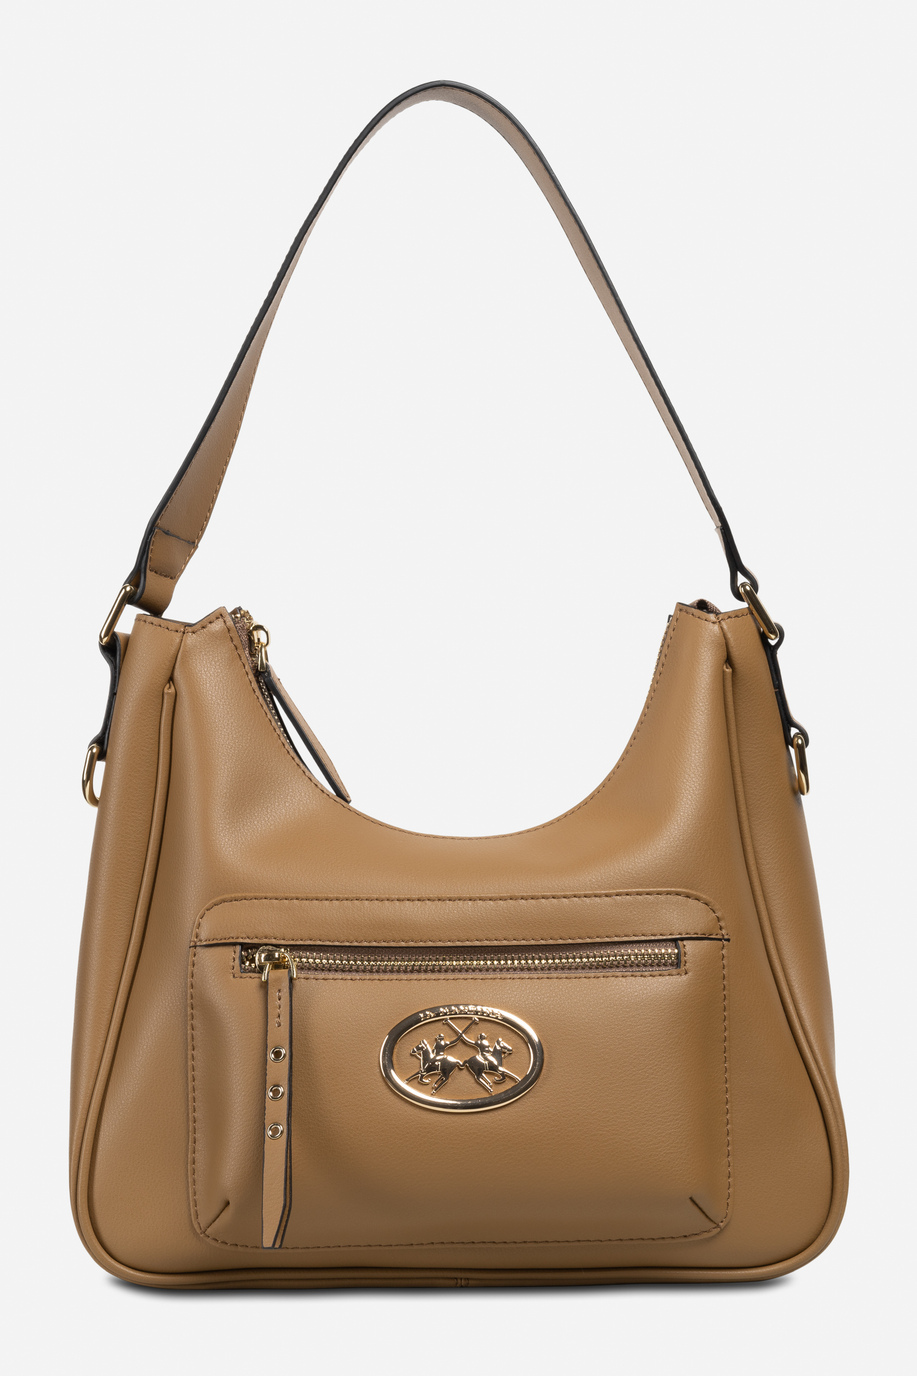 Women's leather bag - Accessories | La Martina - Official Online Shop